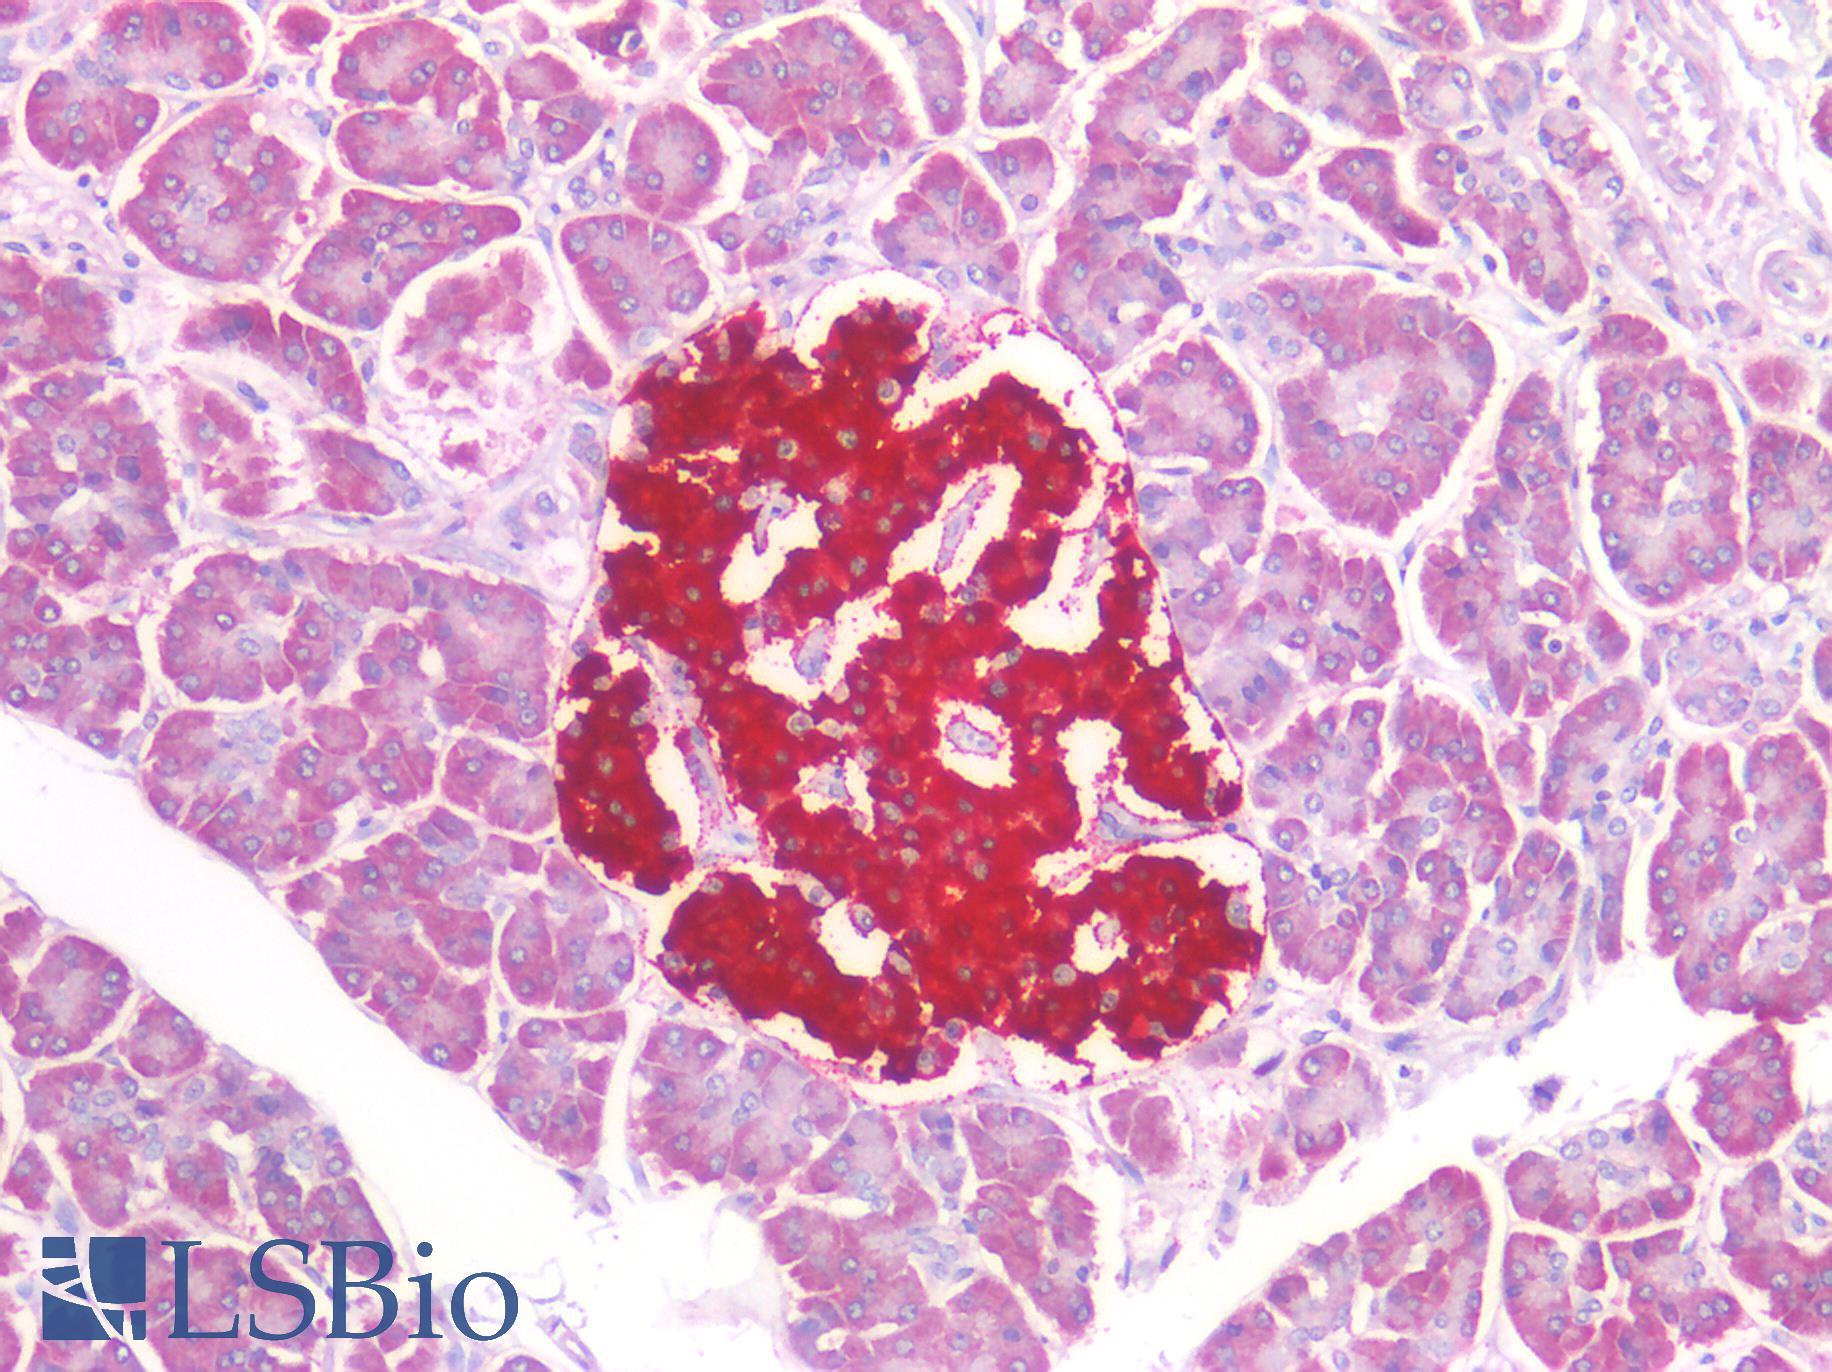 IPO5 / RANBP5 Antibody - Human Pancreas: Formalin-Fixed, Paraffin-Embedded (FFPE)